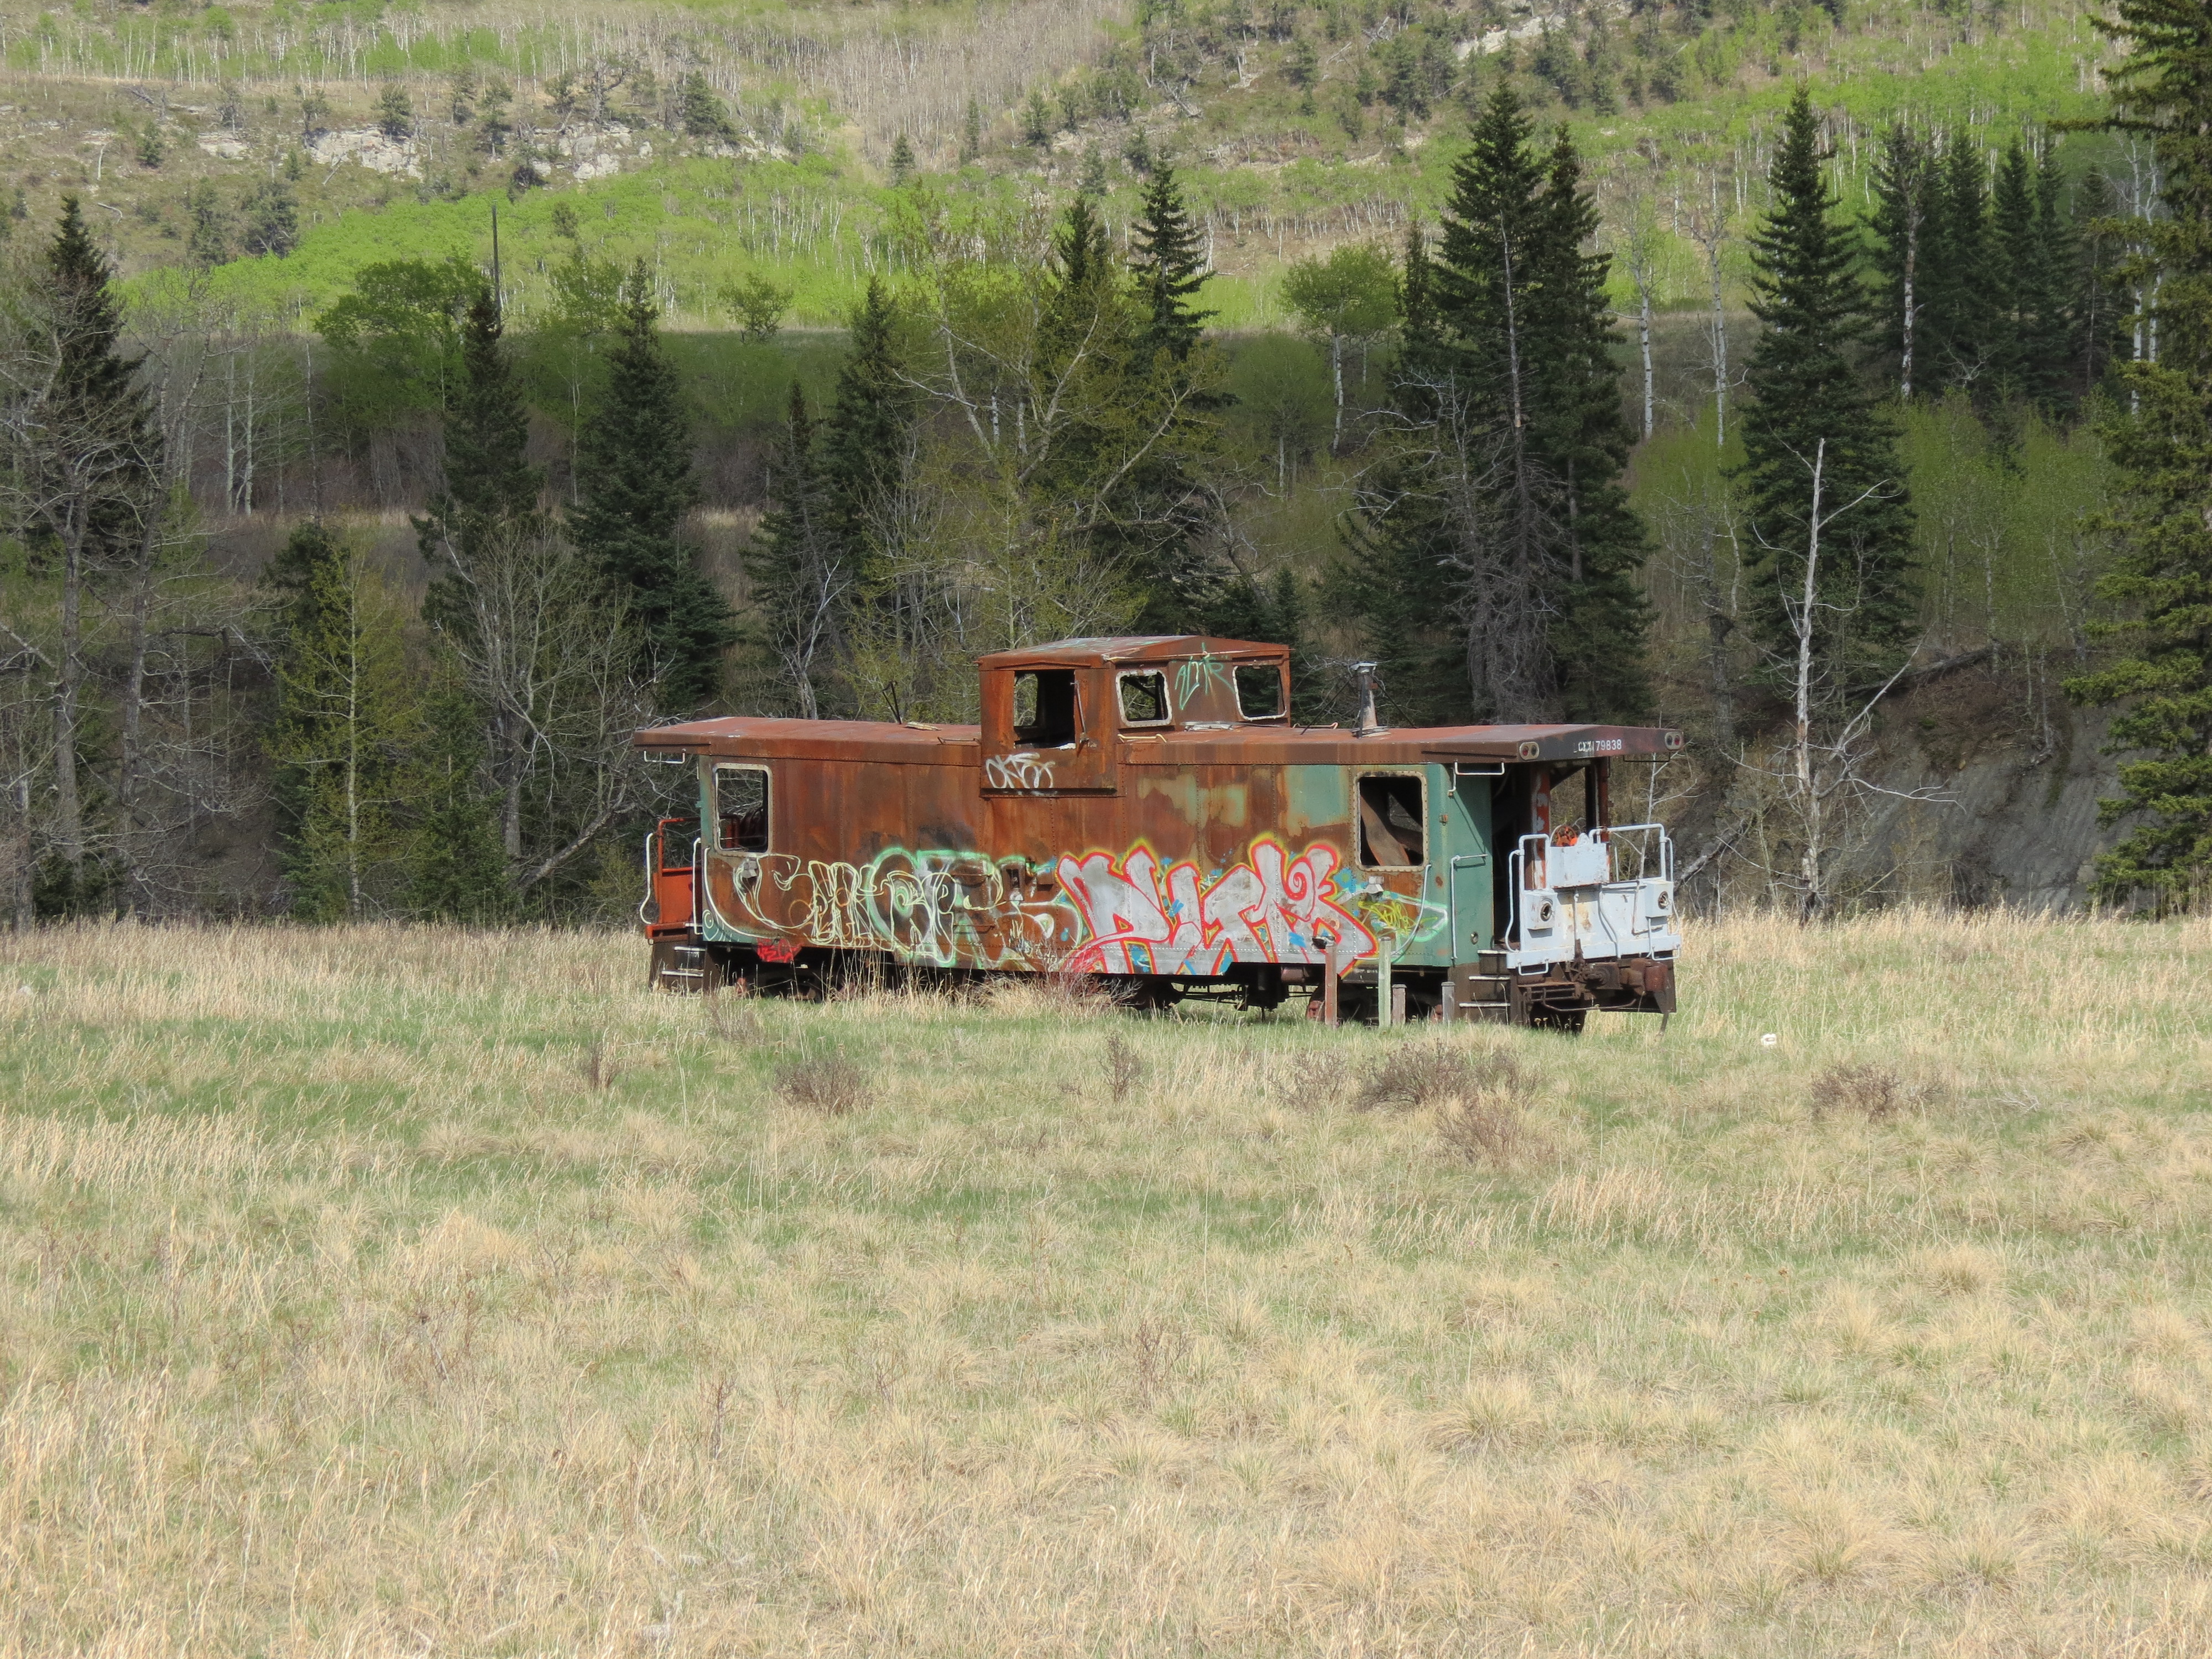 Abandoned caboose